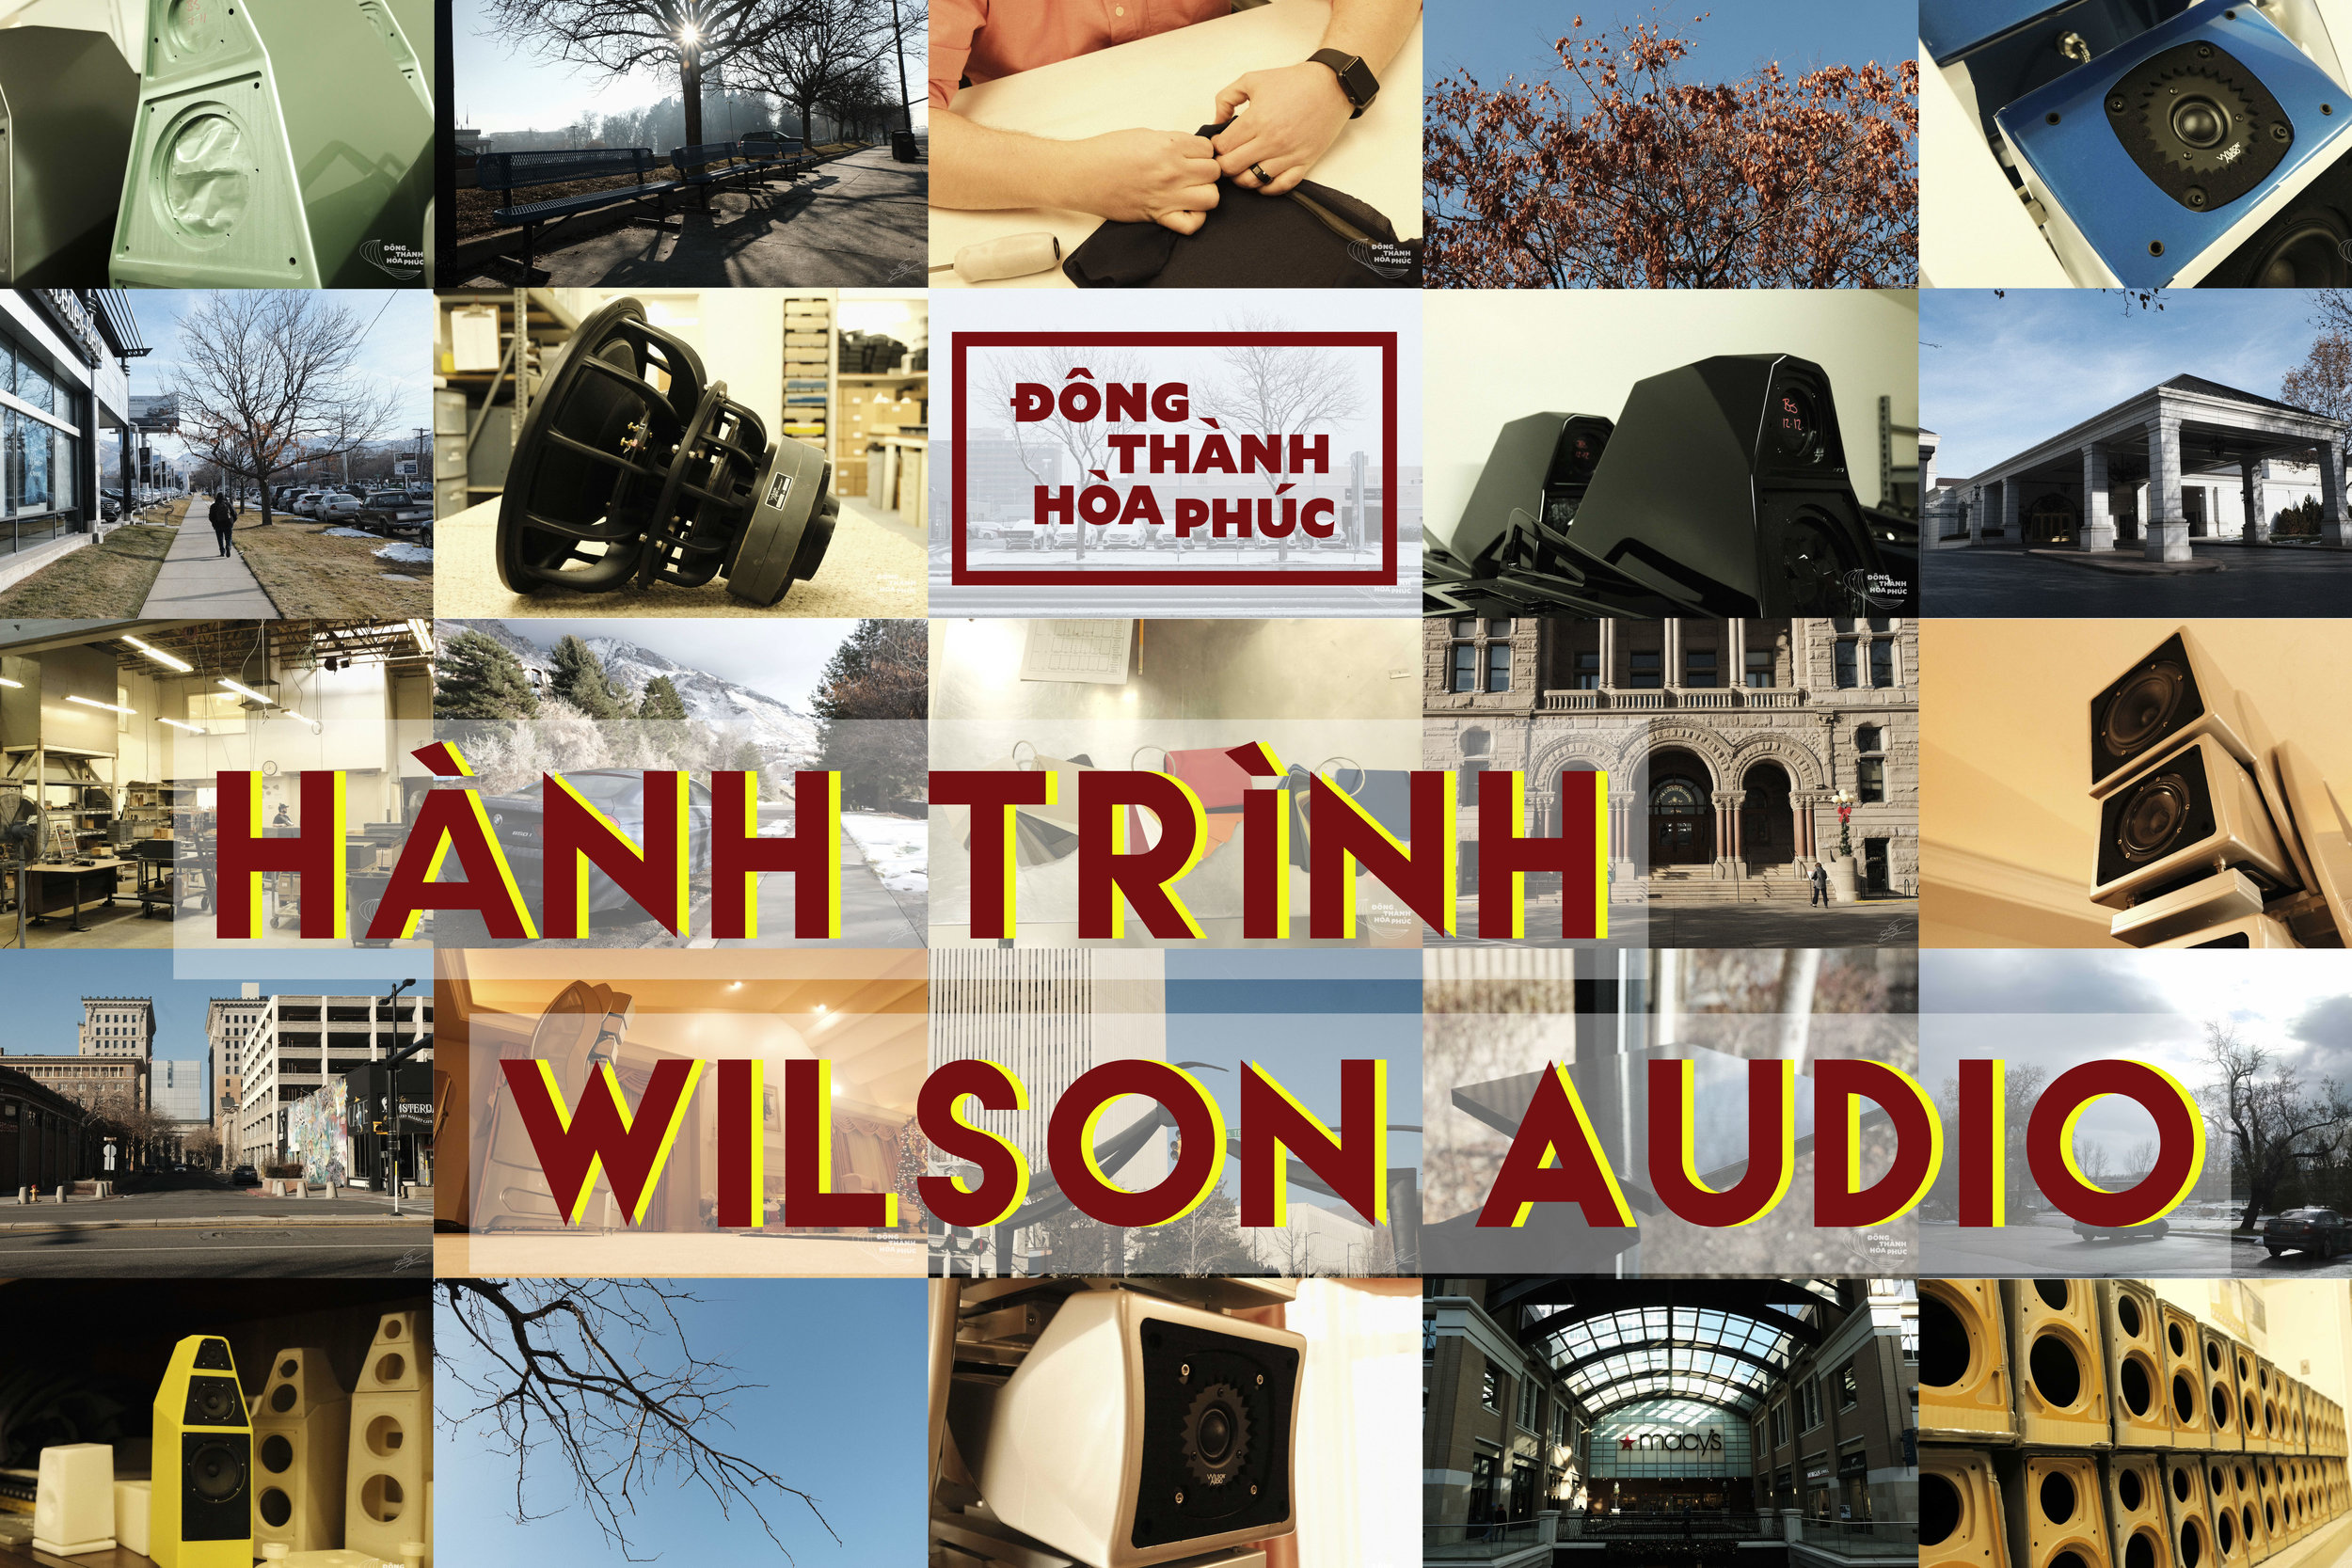 Hành Trình Wilson Audio Đông Thành - Hòa Phúc